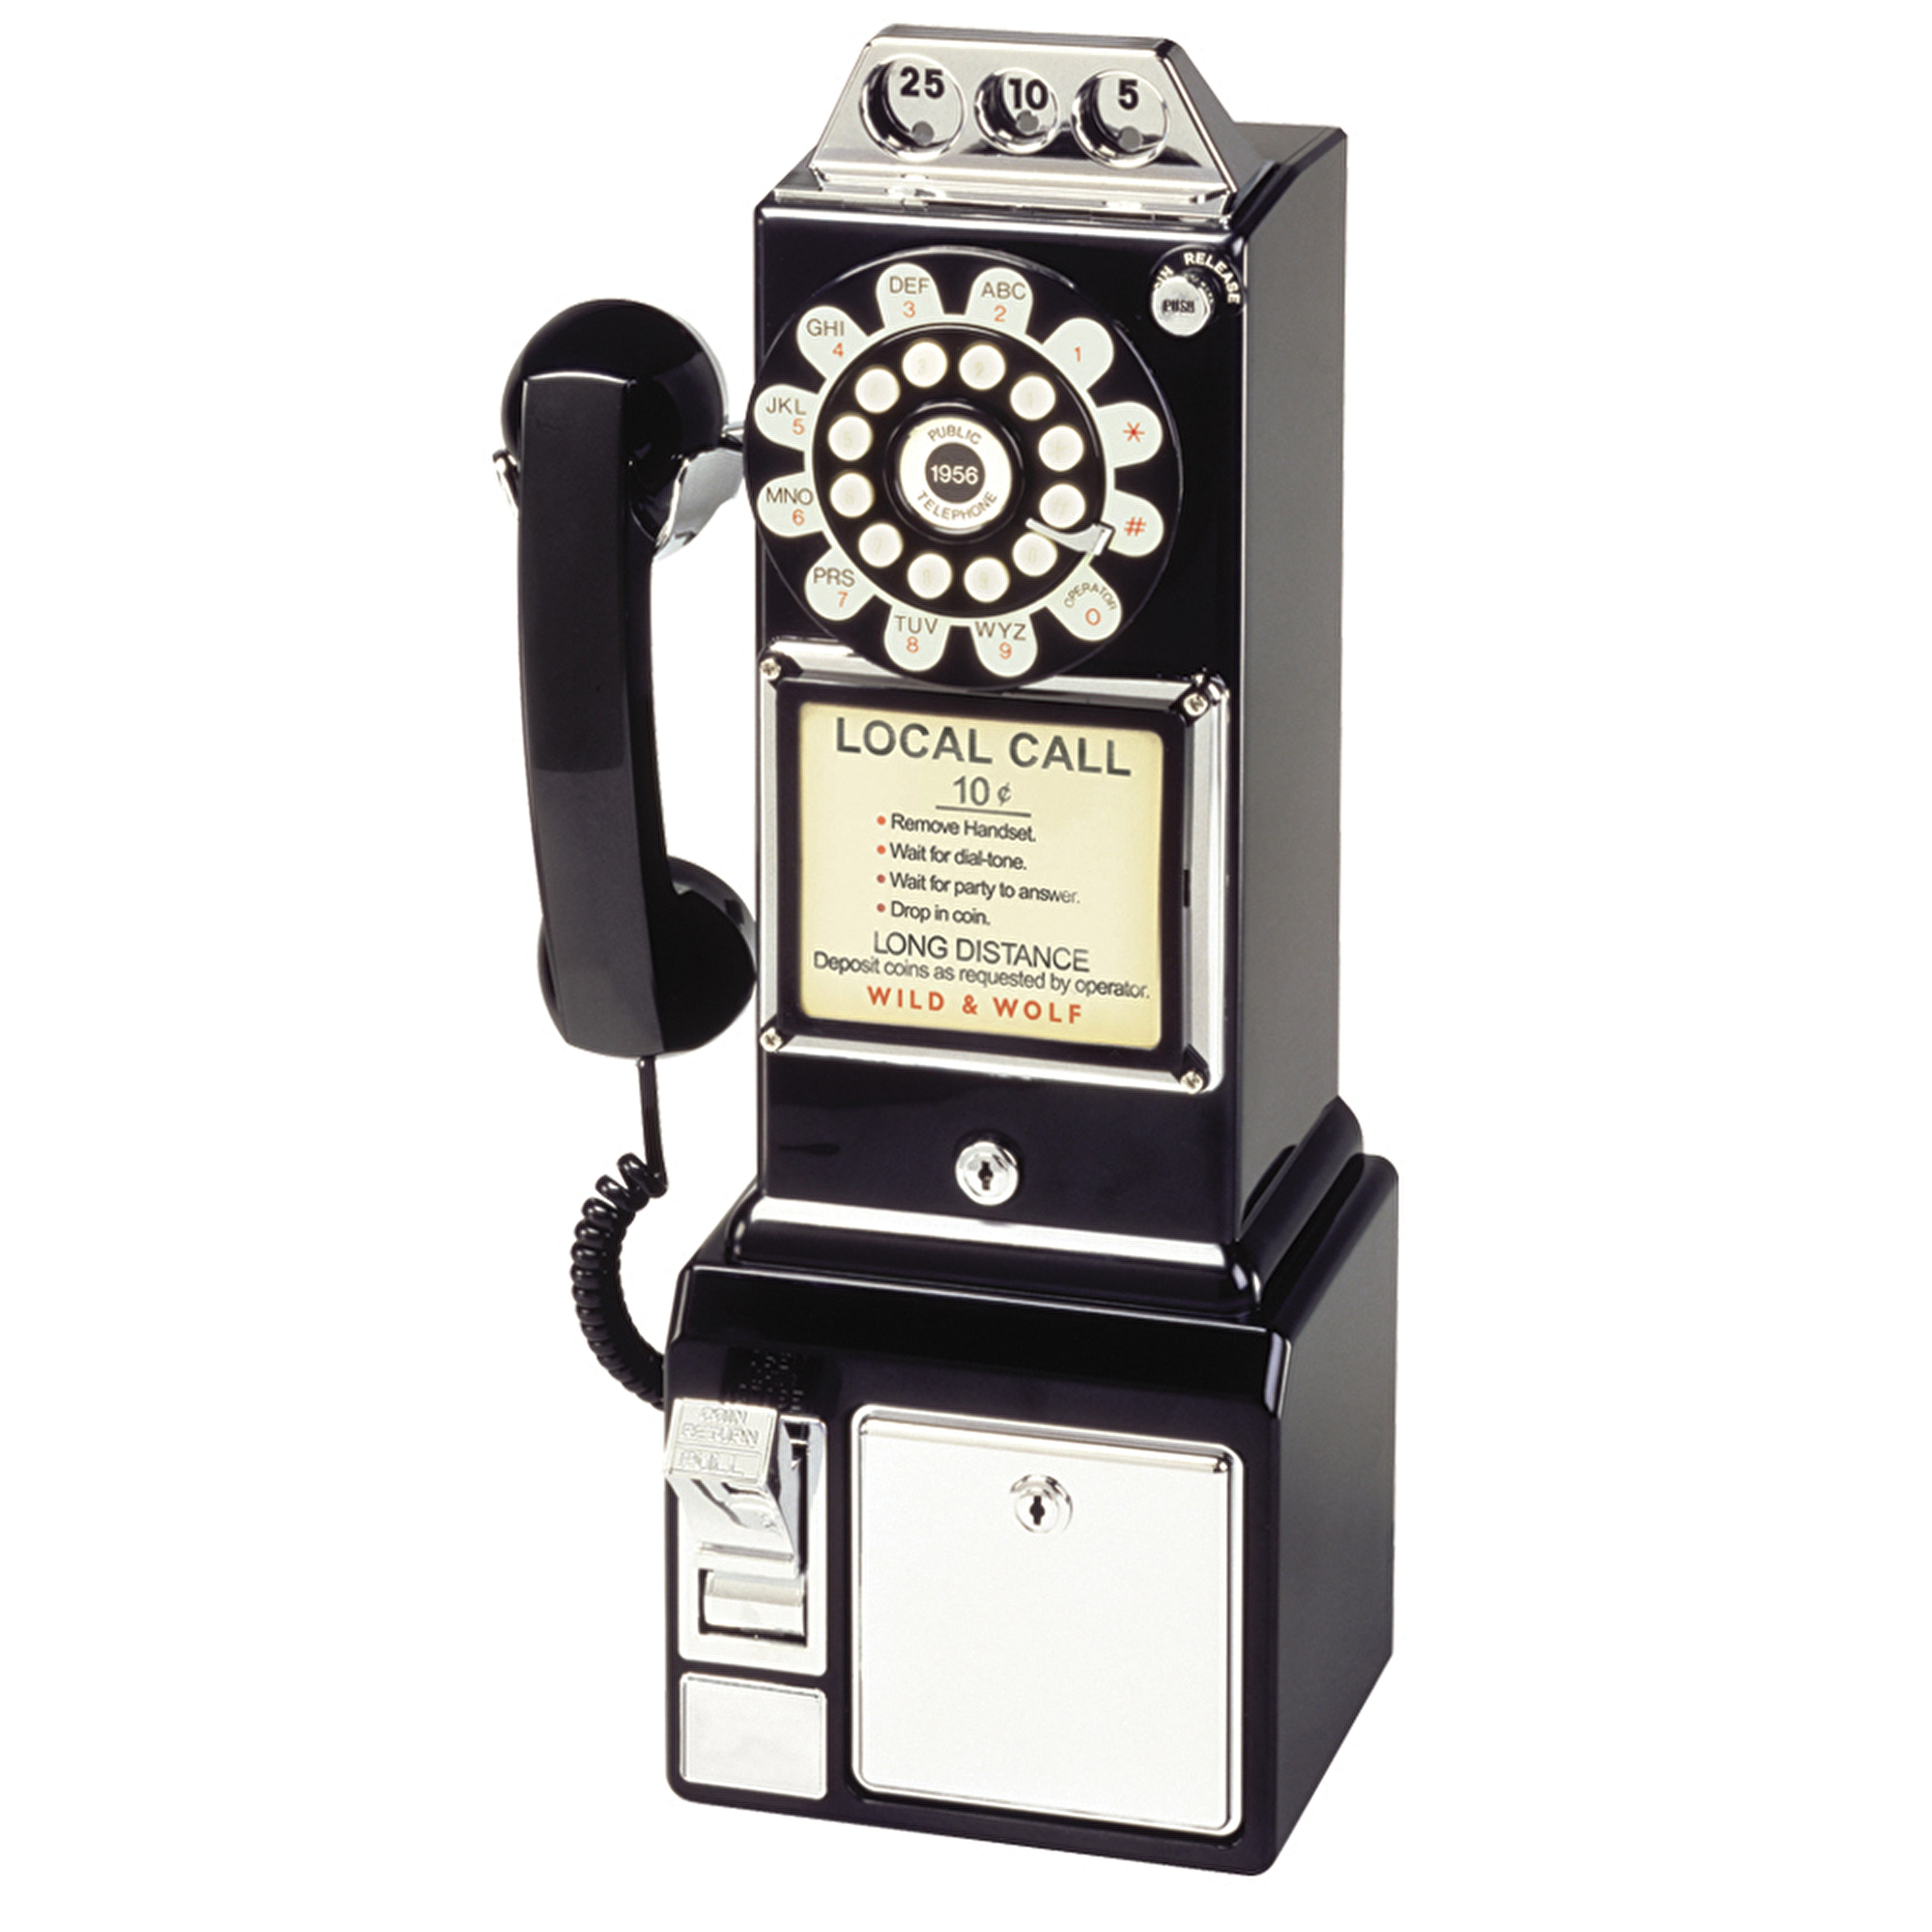 TELEPHONE VINTAGE DINER - Téléphone rétro diner américain.